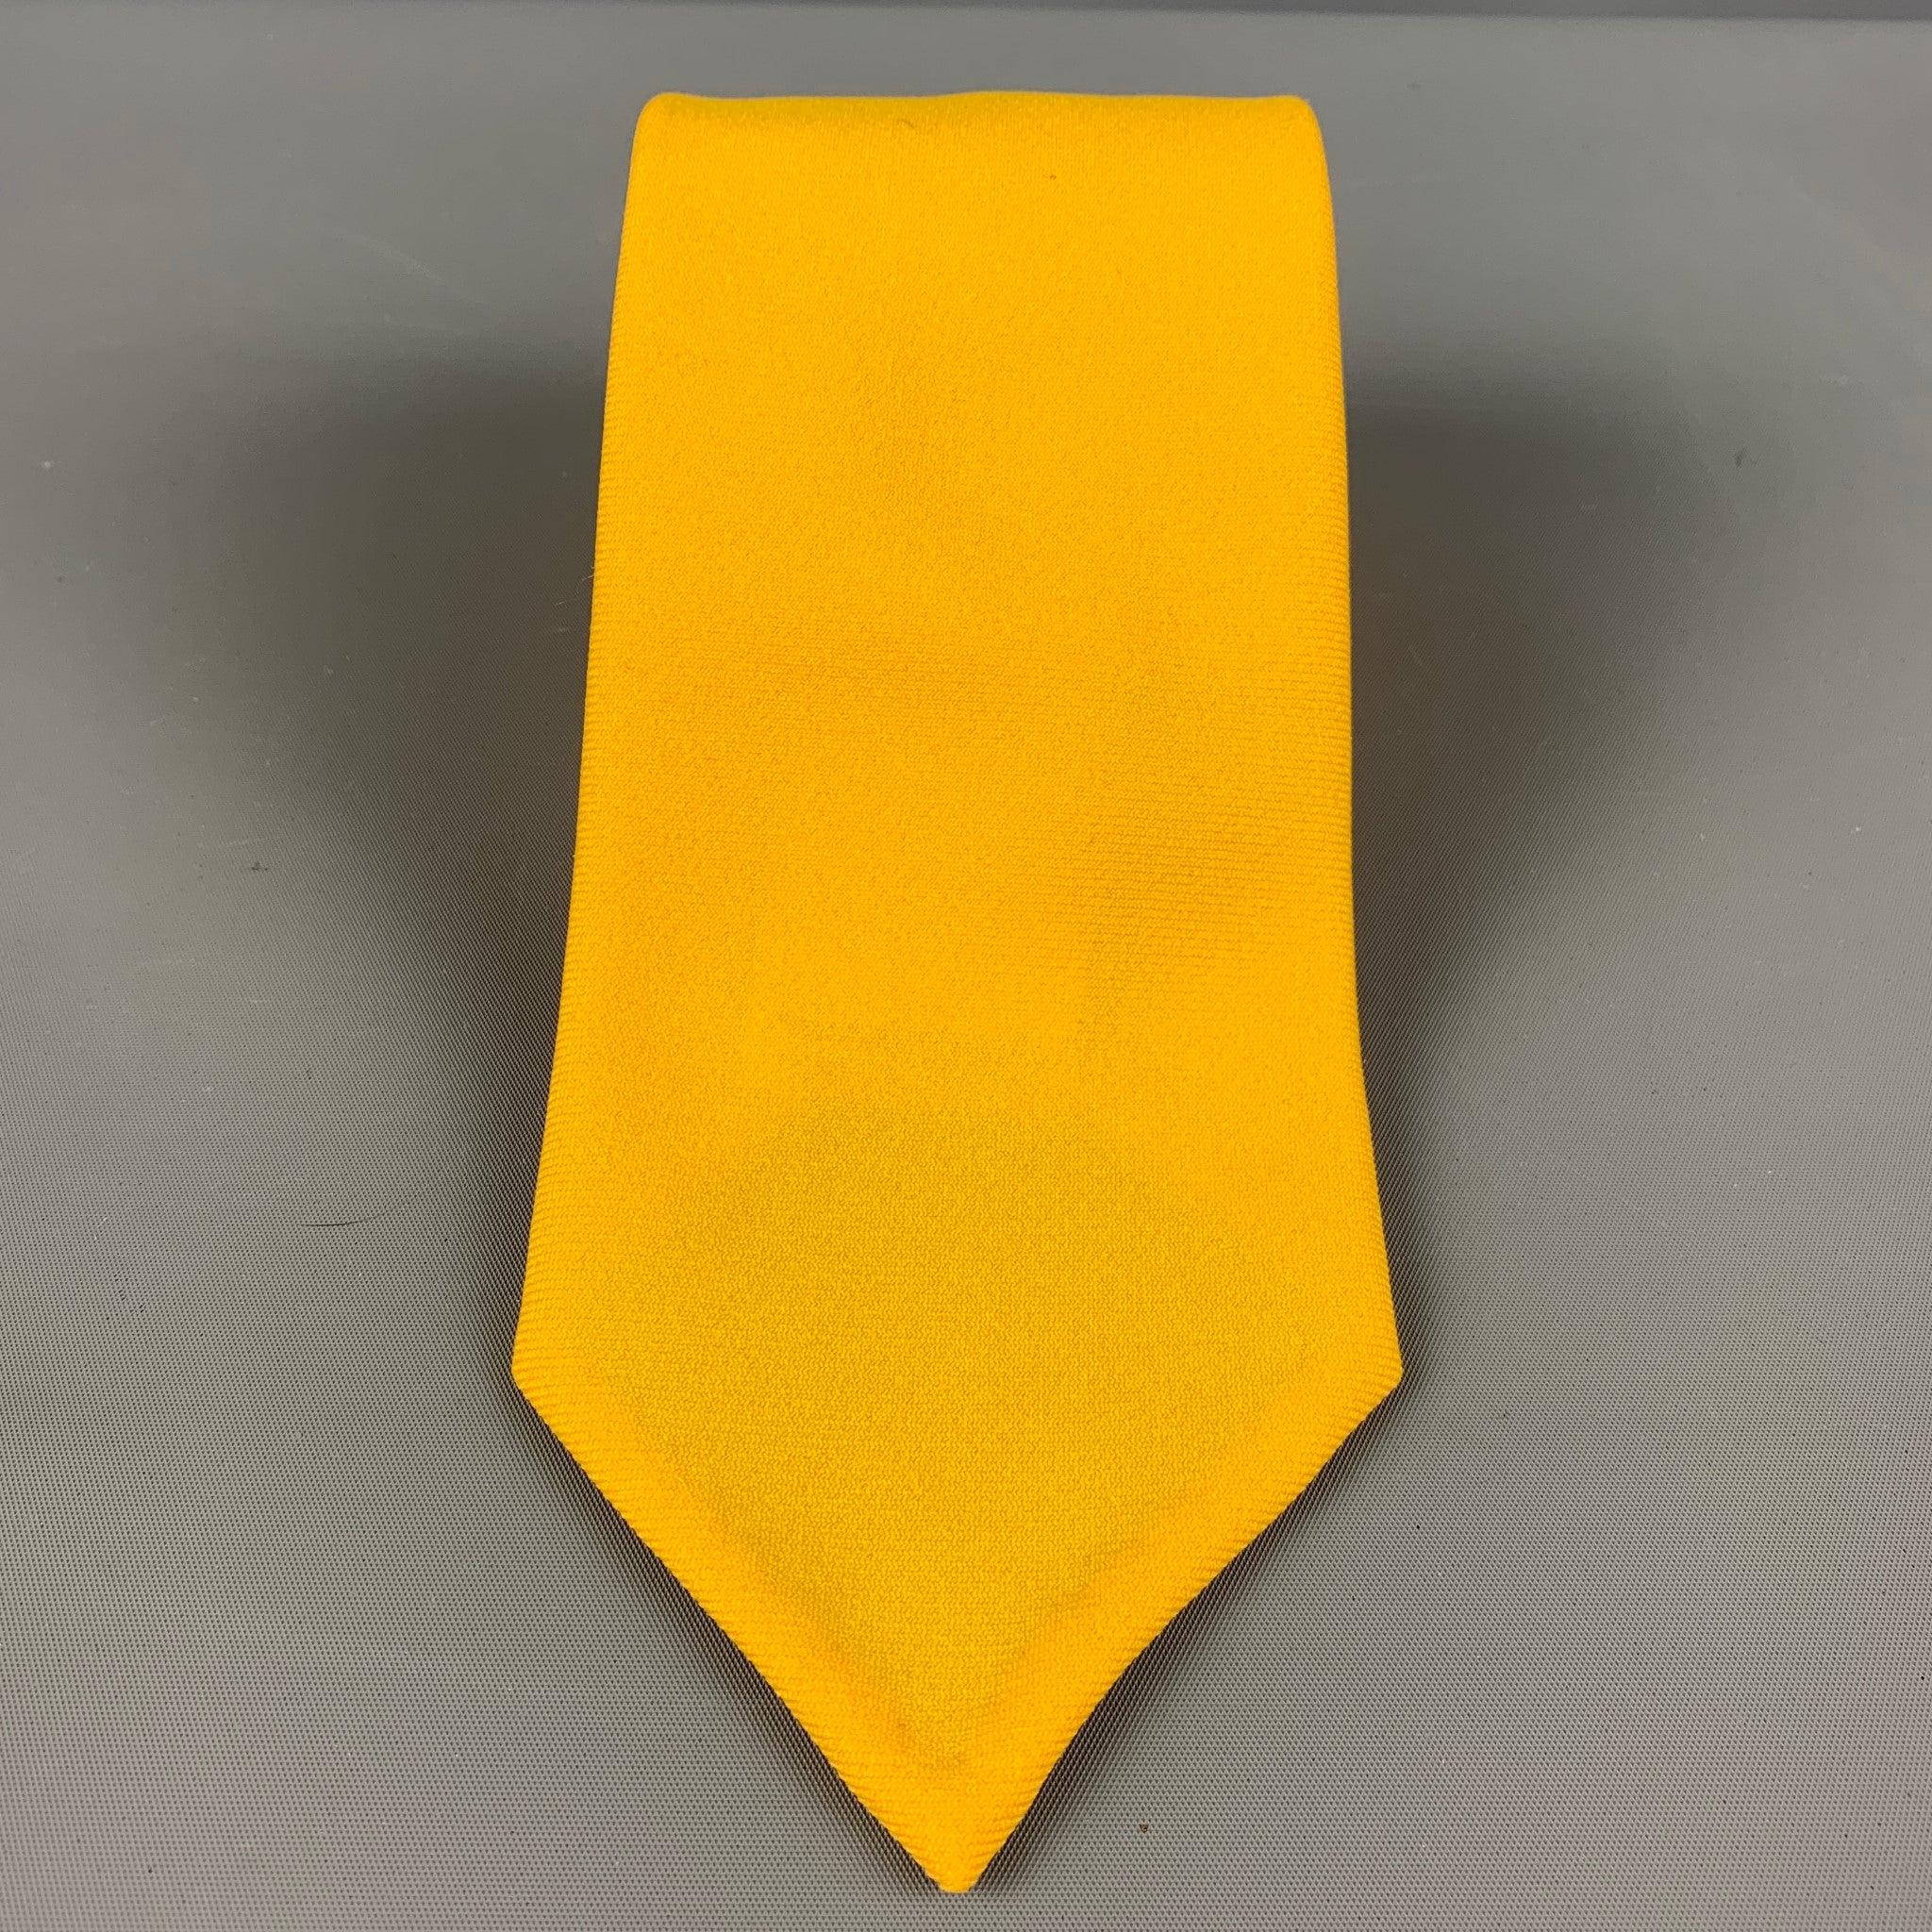 La cravate classique en polyester de Marni se caractérise par une base jaune frappante. Fabriquées en Italie.
Très bon état d'origine.

 

Mesures : 
  
Largeur : 3,5 pouces 
Longueur : 56 pouces 



  
  
 
Référence Sui Generis : 124145
Catégorie